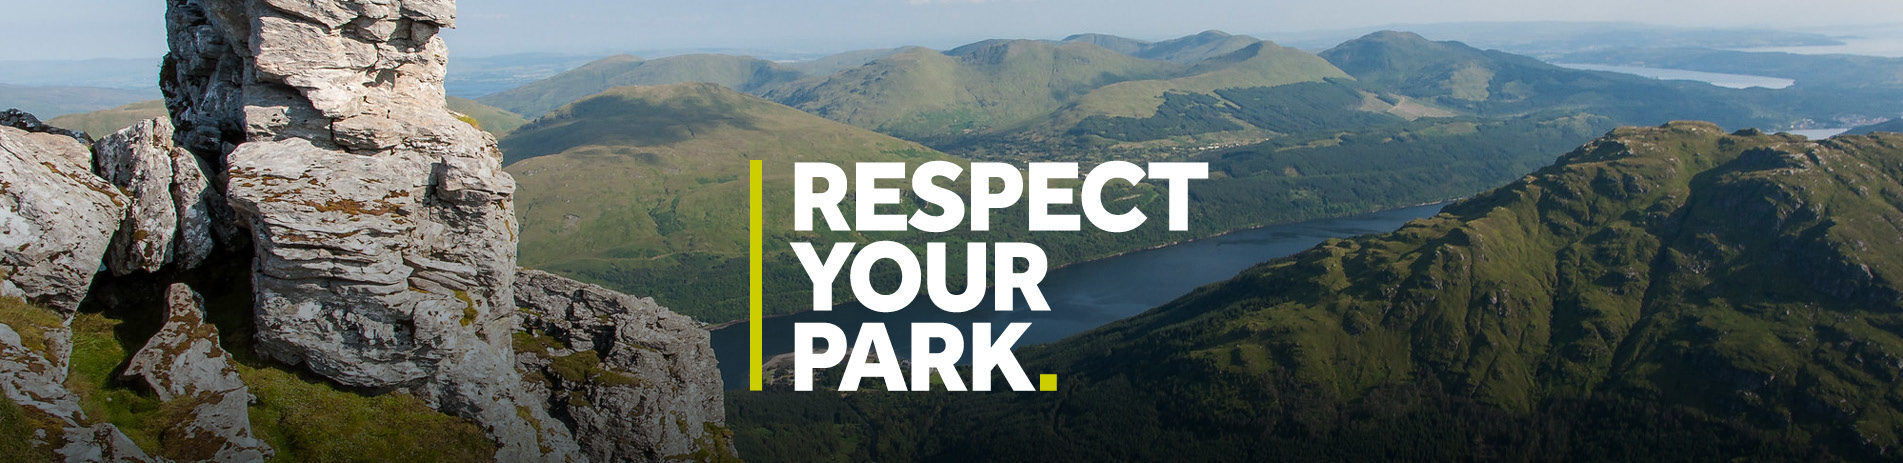 respect-your-park